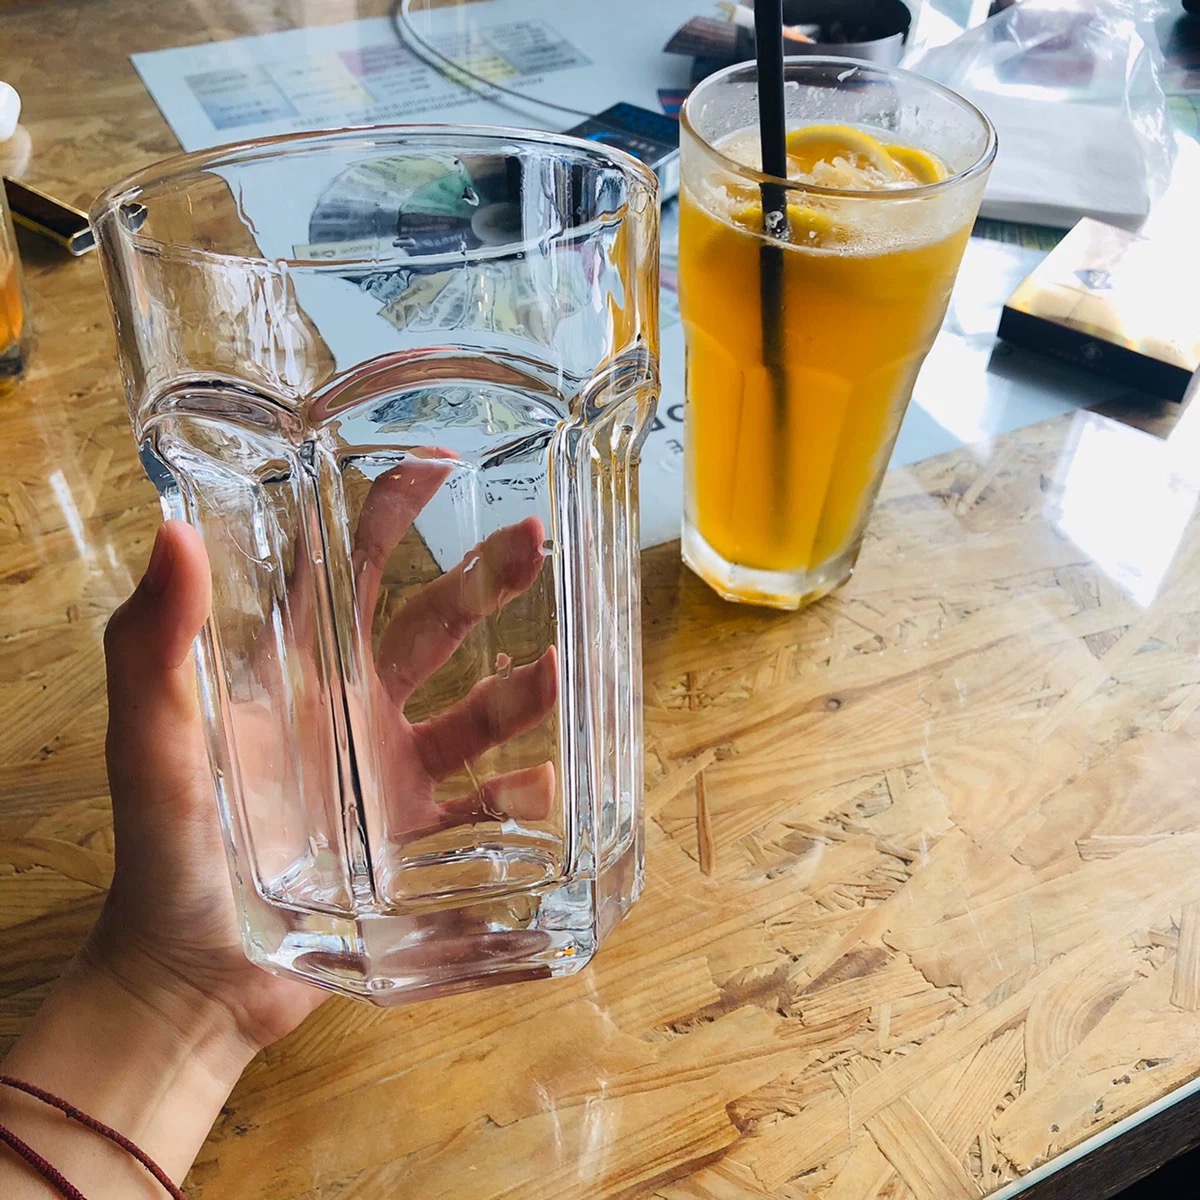 ins网红餐厅冷饮杯 800ml超大玻璃柠檬果汁杯 水果茶杯 莫吉托杯